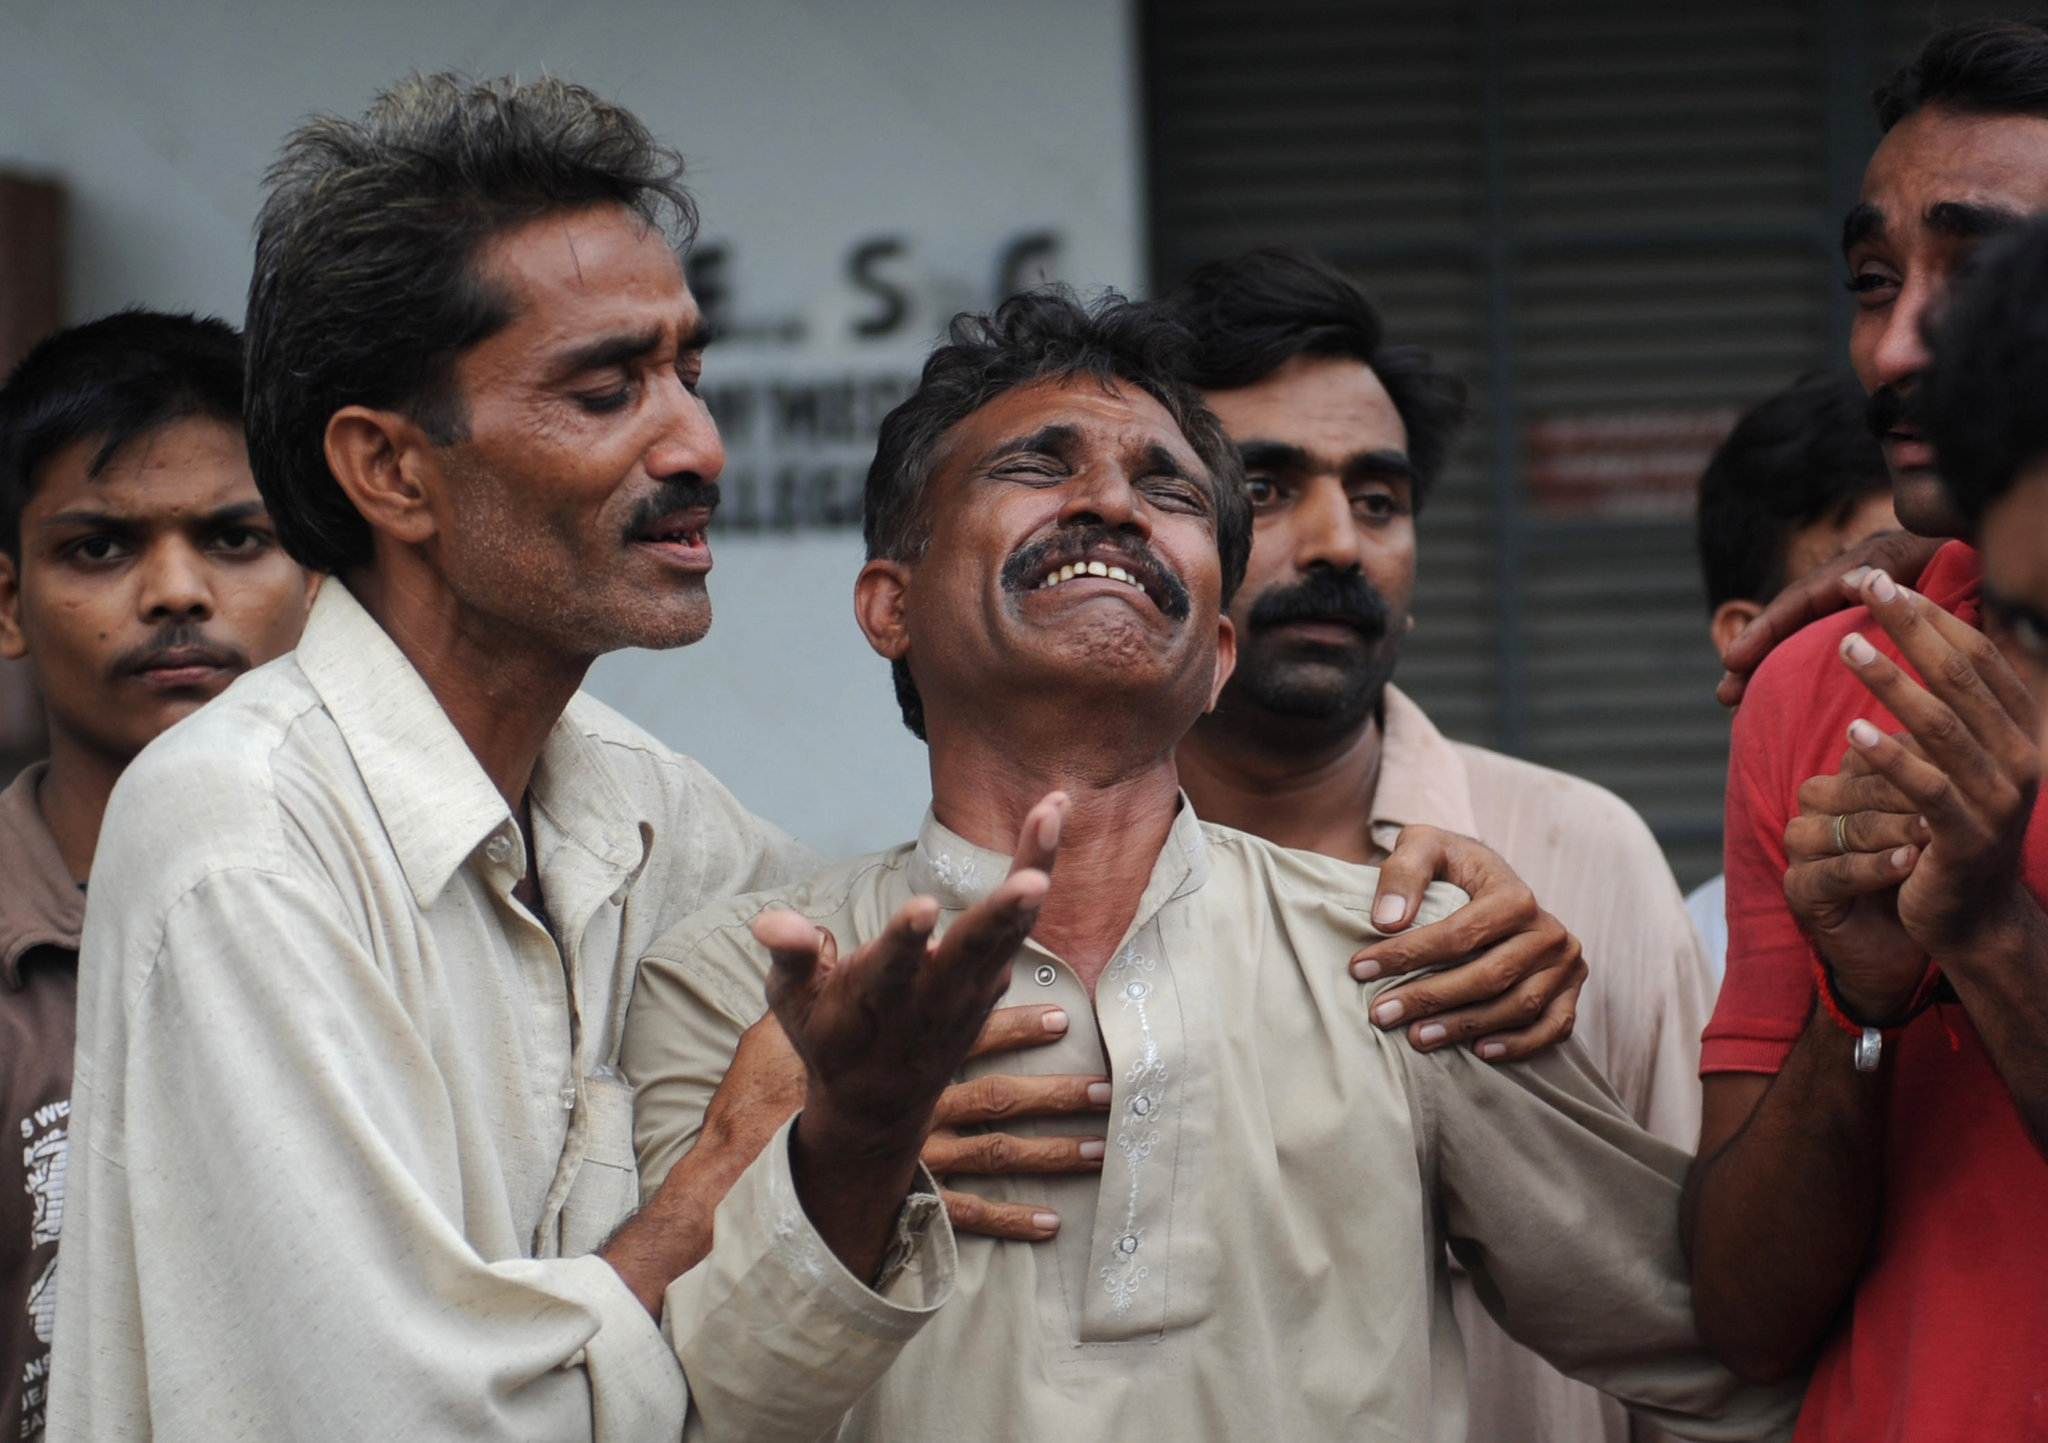 Πακιστάν αεροπλάνο – συντριβή: 97 νεκροί, 2 επιζώντες